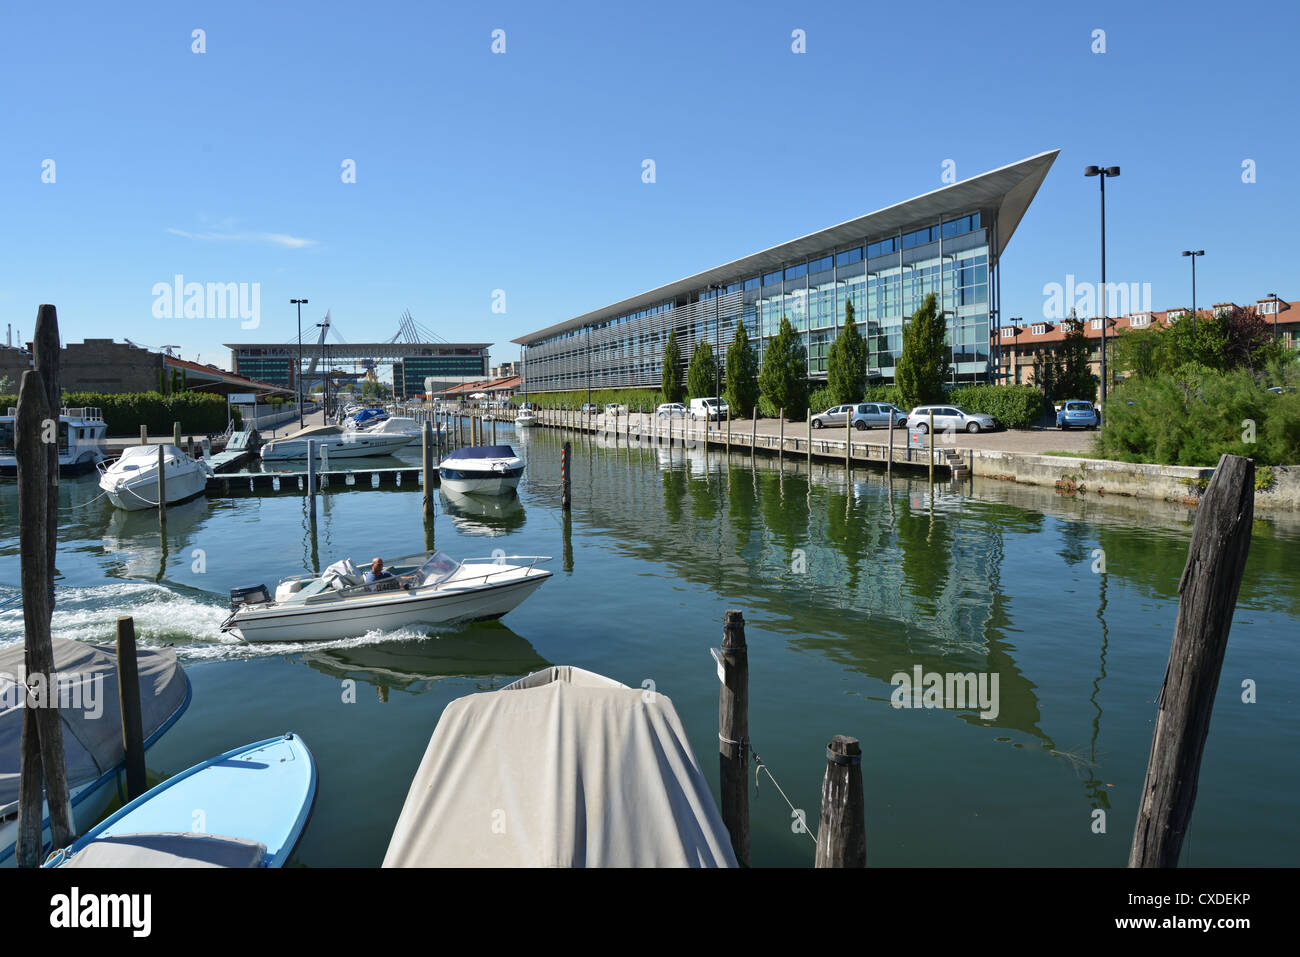 La Vela Centre and La Laguna Marina, Mestre, City of Venice, Venice Province, Veneto Region, Italy Stock Photo